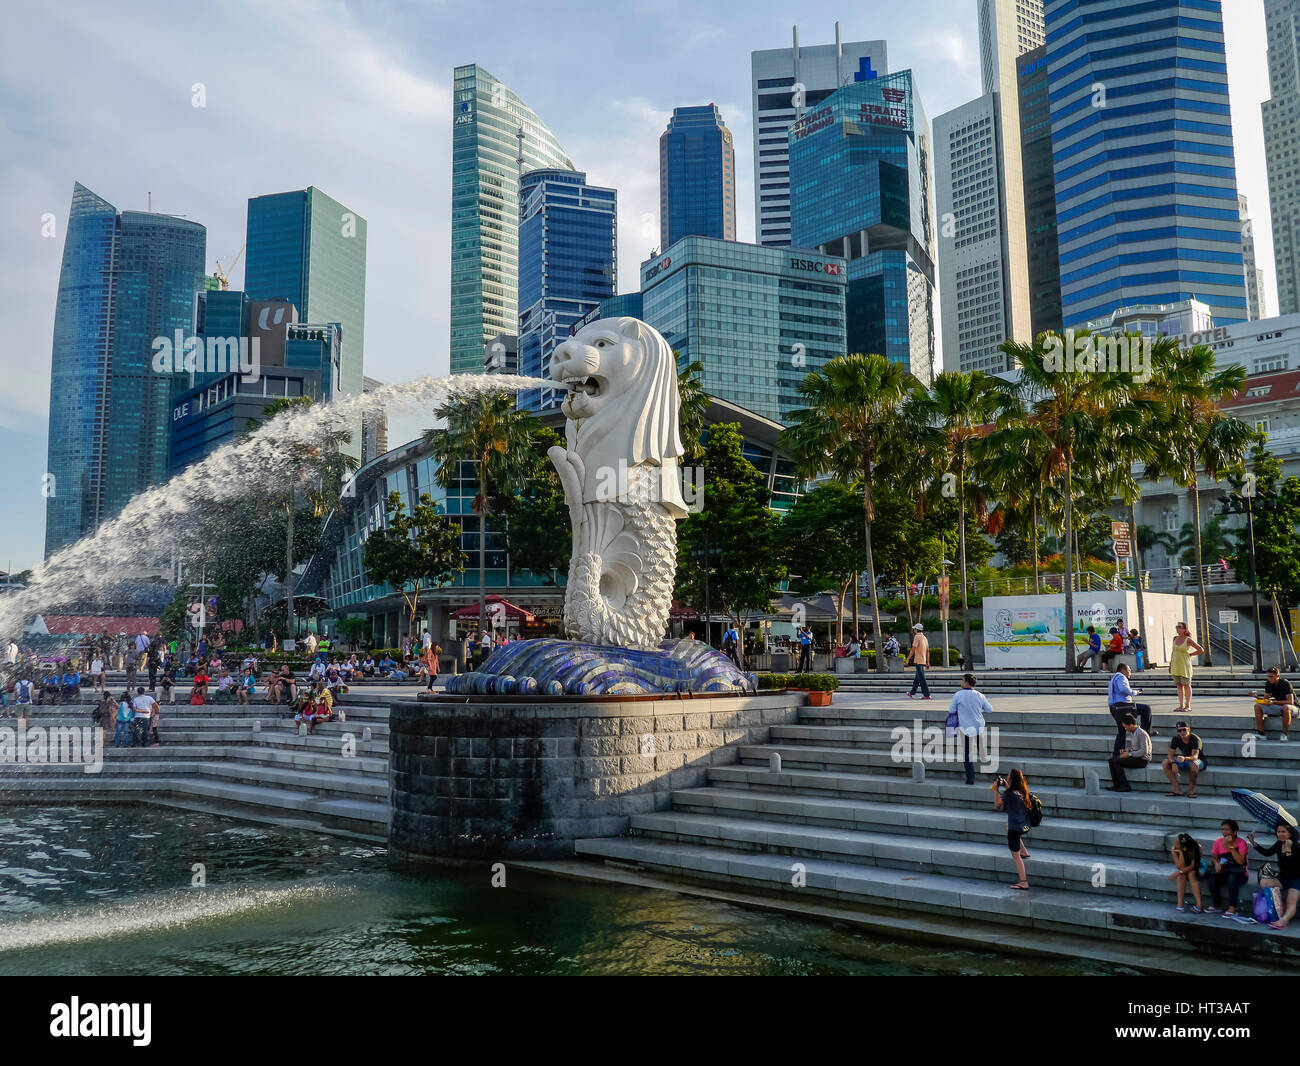 El Merlion, hito de la ciudad de rascacielos del centro financiero, en el centro de la ciudad, Singapur Foto de stock